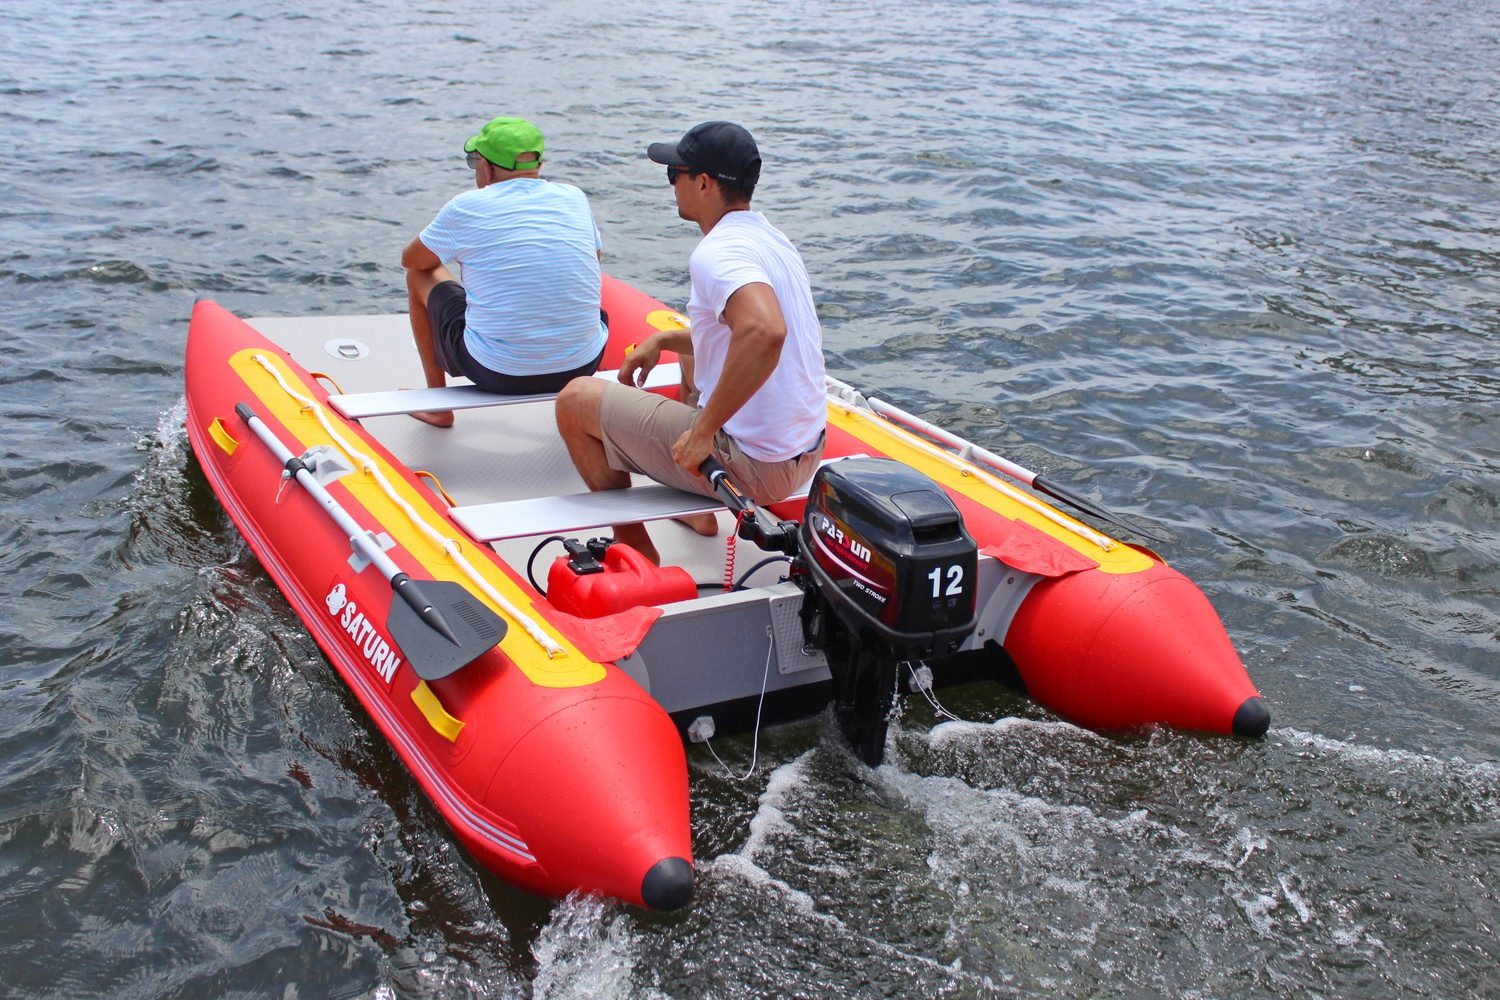 sport catamaran inflatable